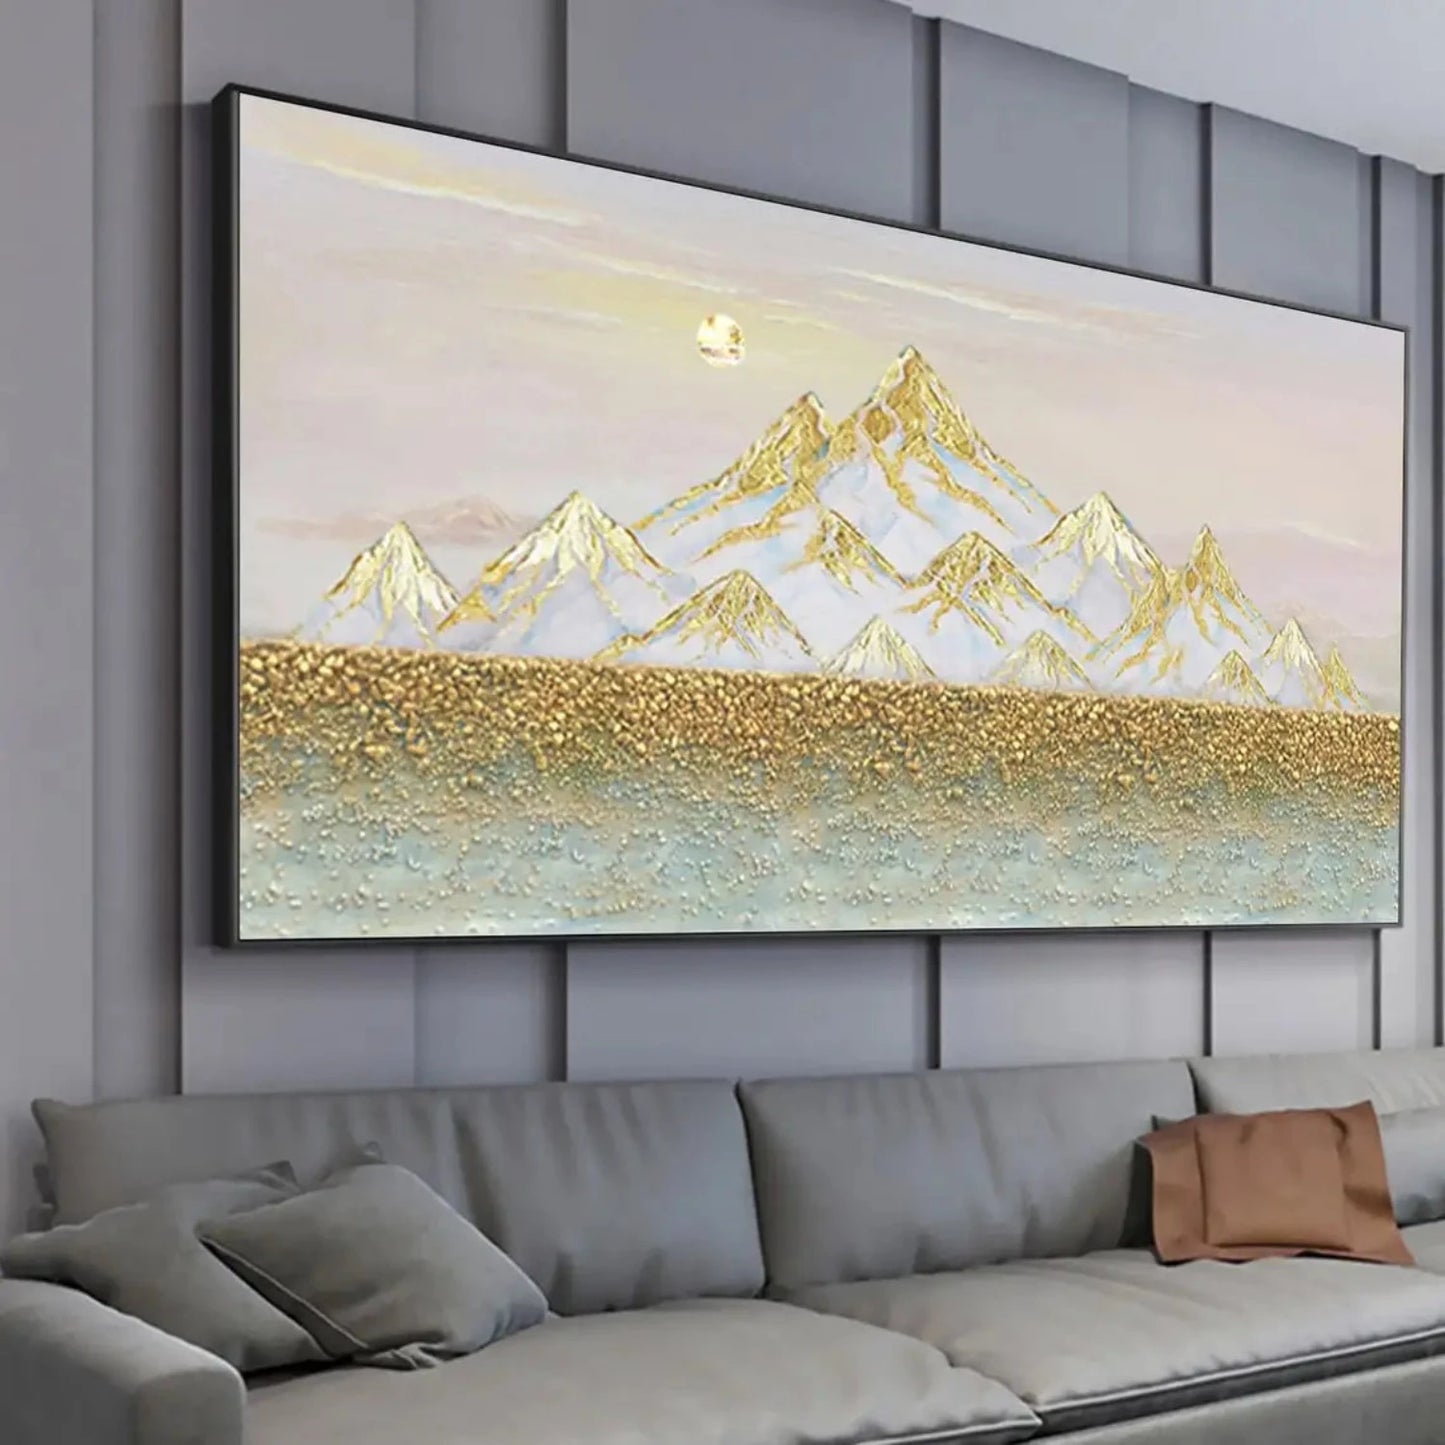 3D Gold Foil Textured Mountains Landscape Painting